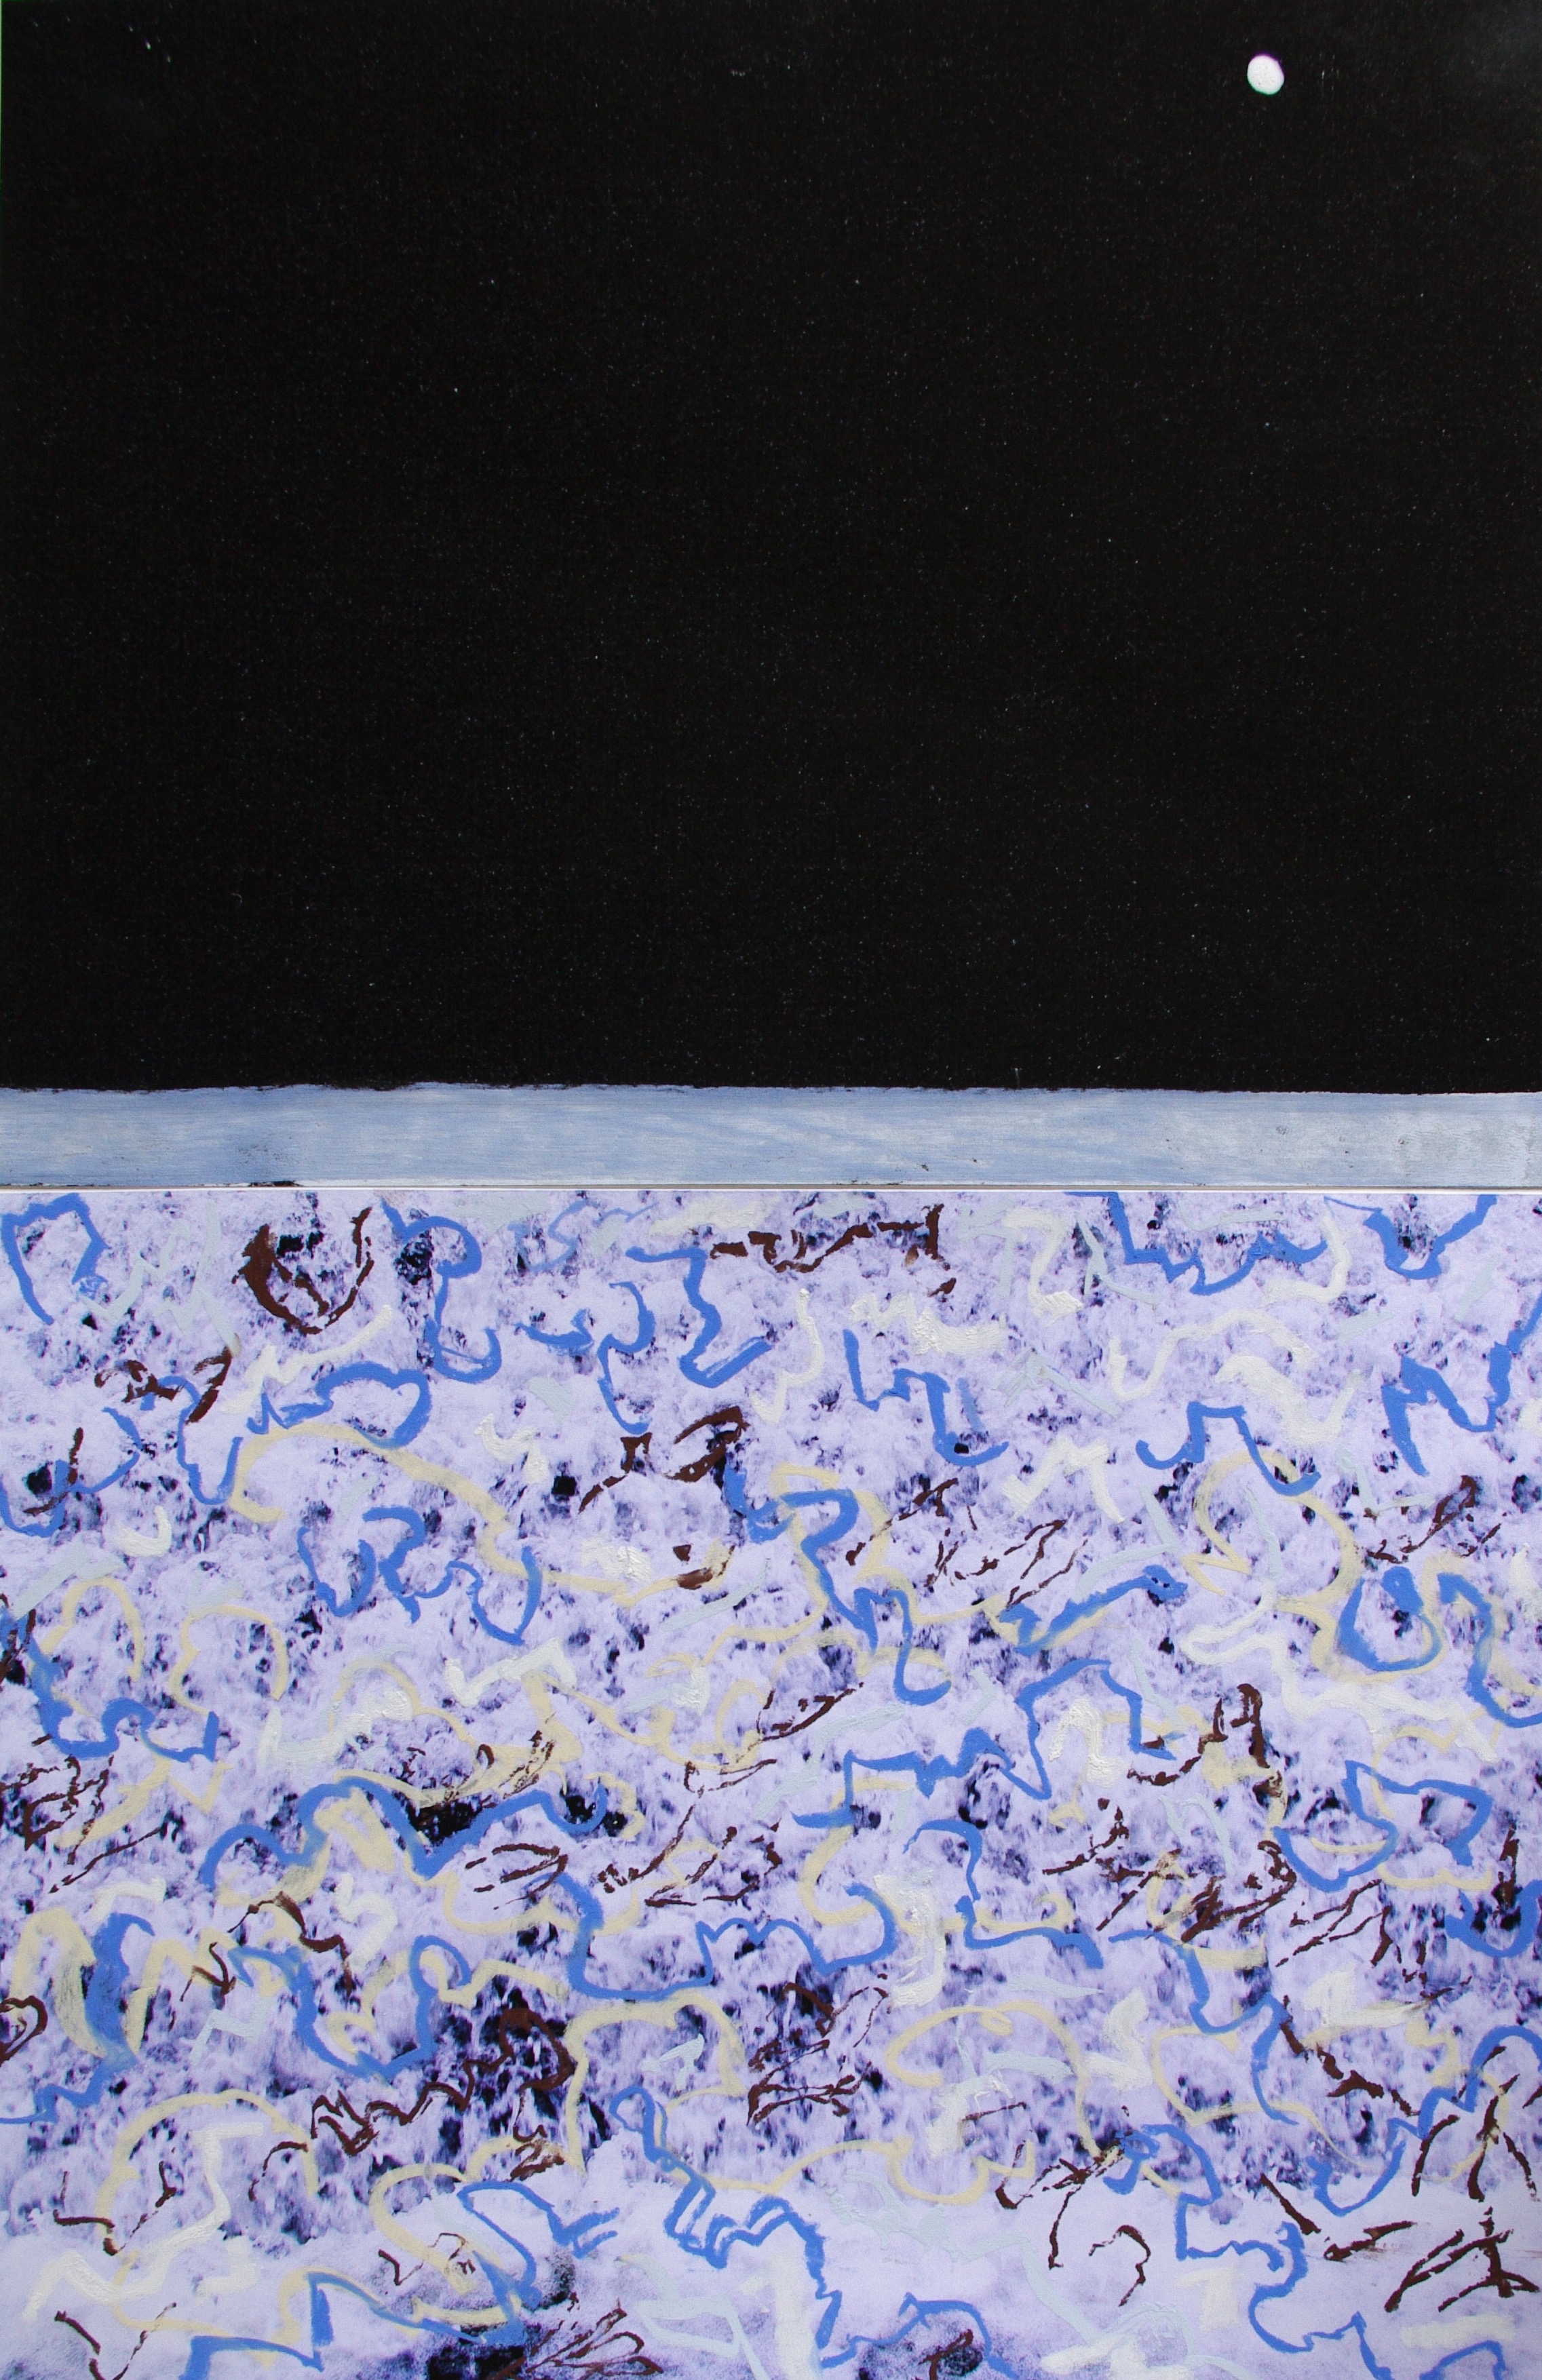  Event Horizon &nbsp;50 cm x 30cm &nbsp;2014 